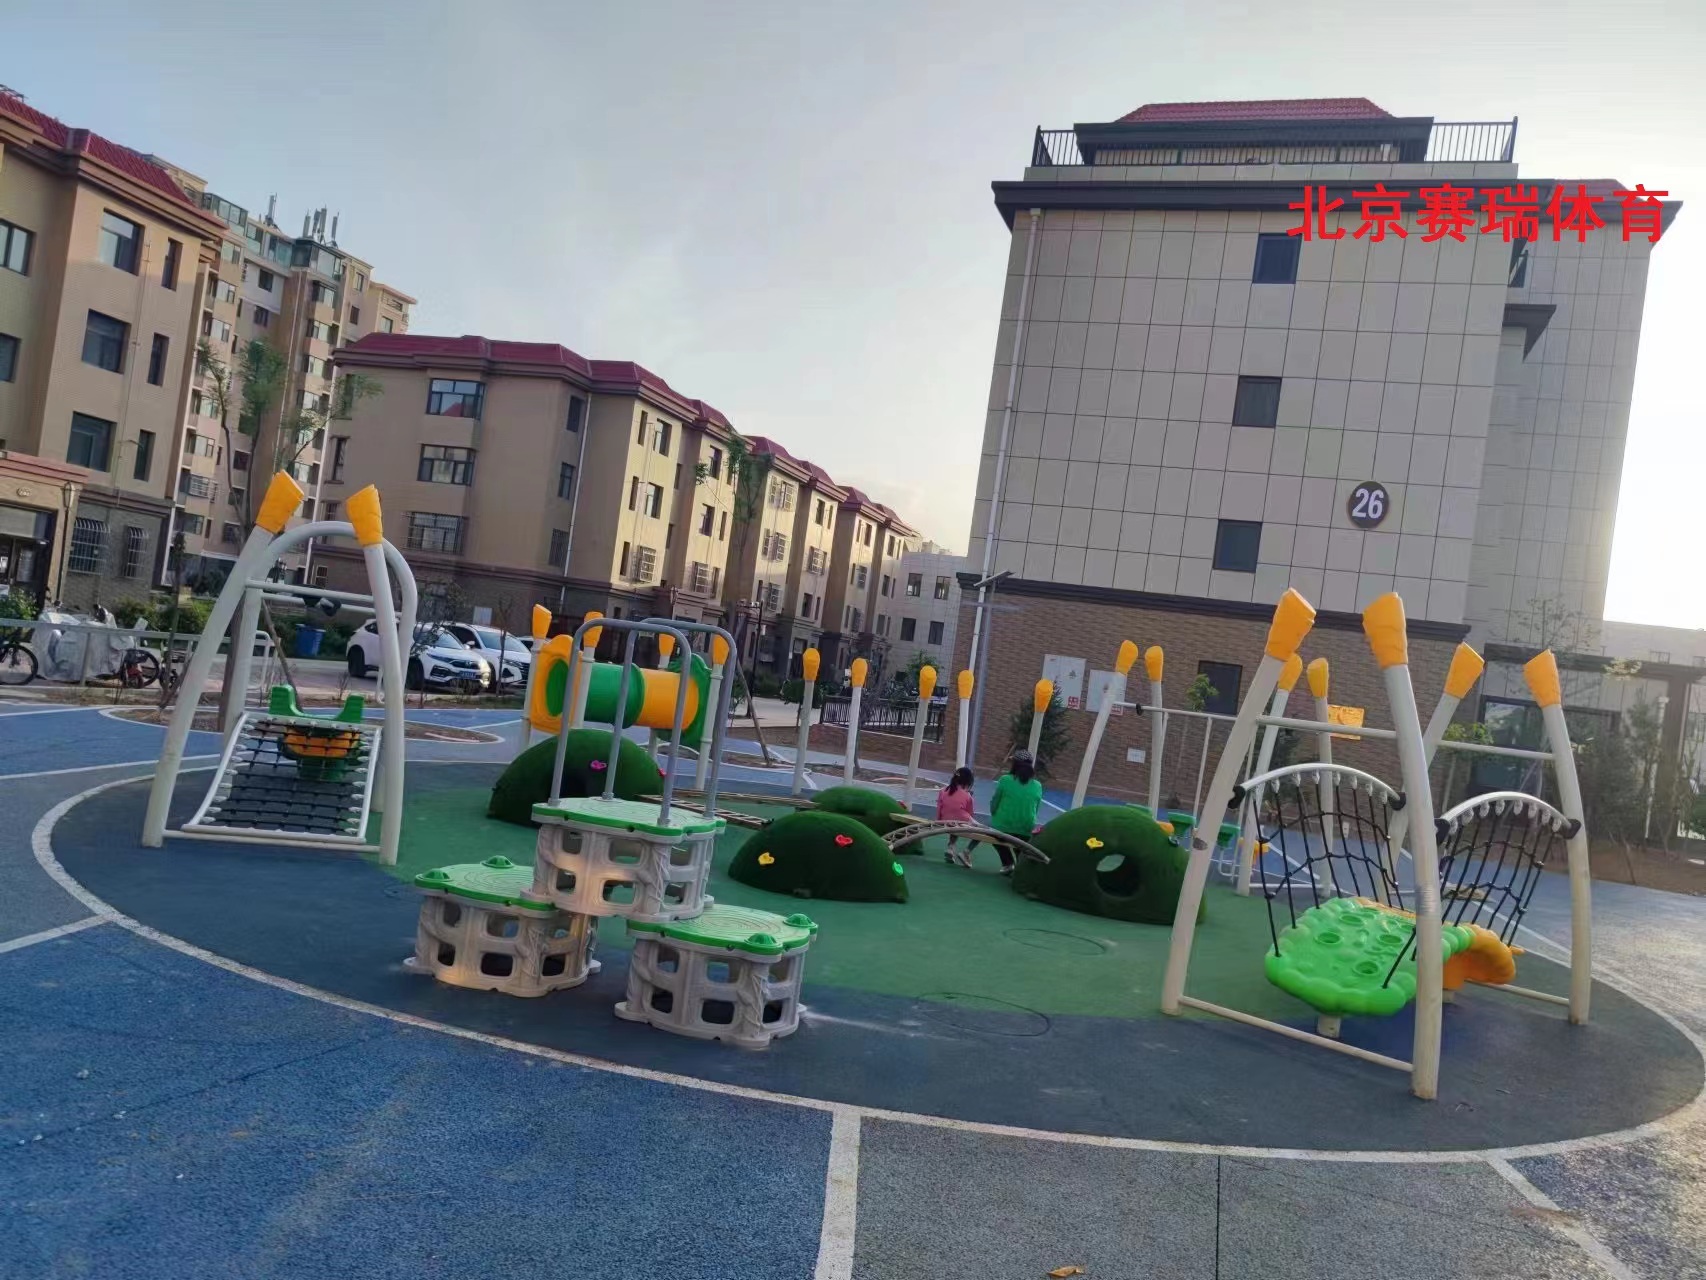 广场儿童游乐设施多少钱  广场儿童游乐设施批发价格 广场儿童游乐设施厂家